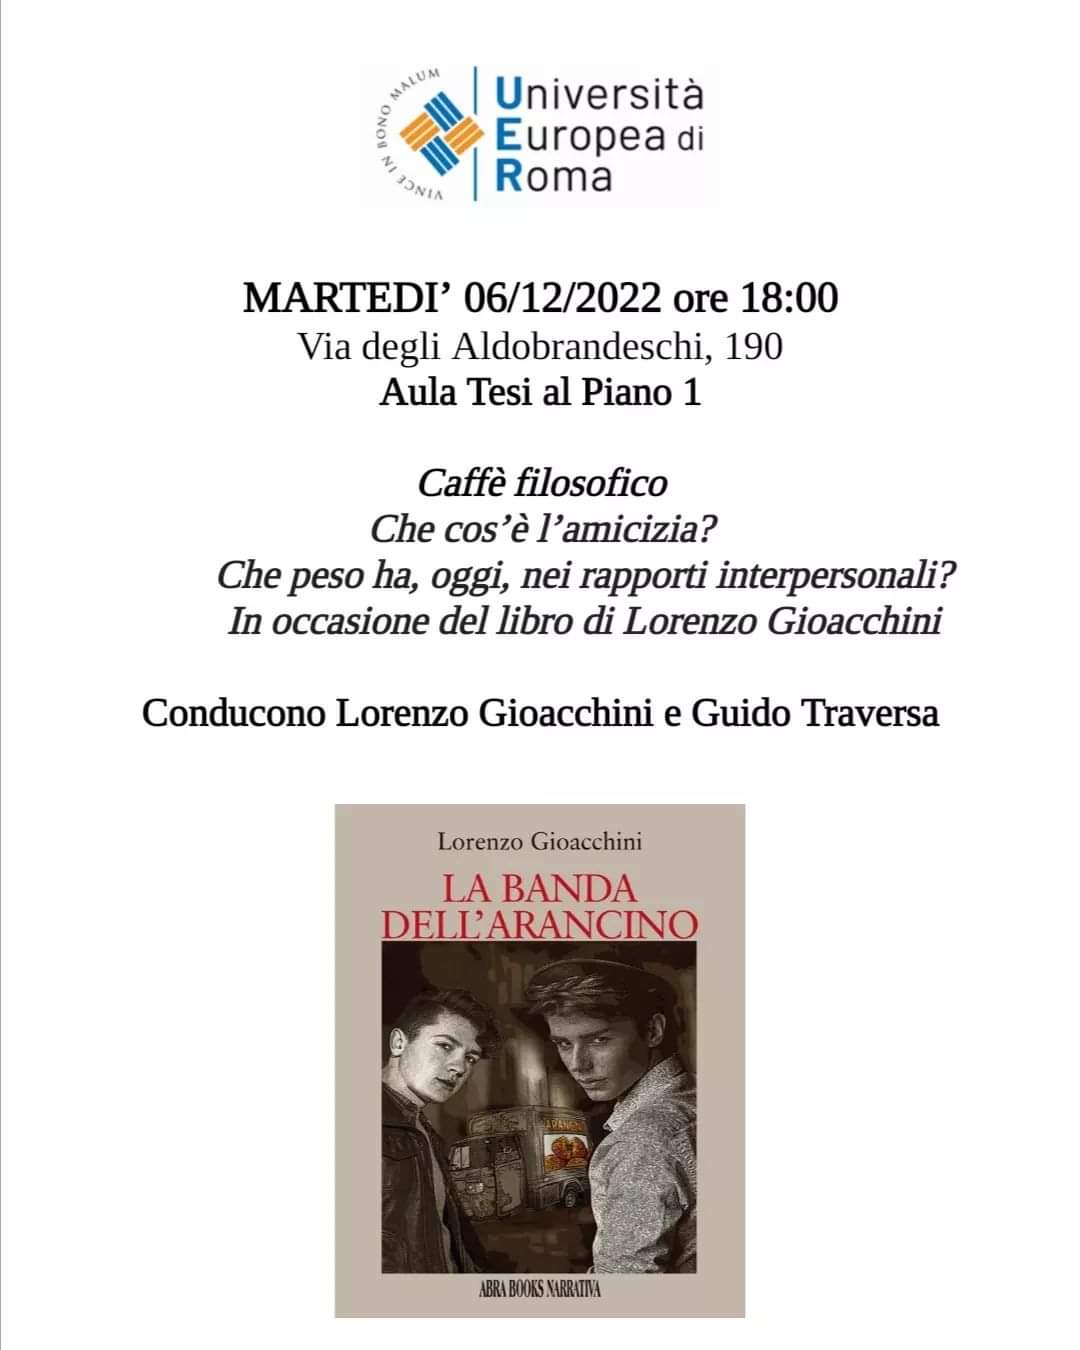 Caffè filosofico con Lorenzo Gioacchini e Guido Traversa